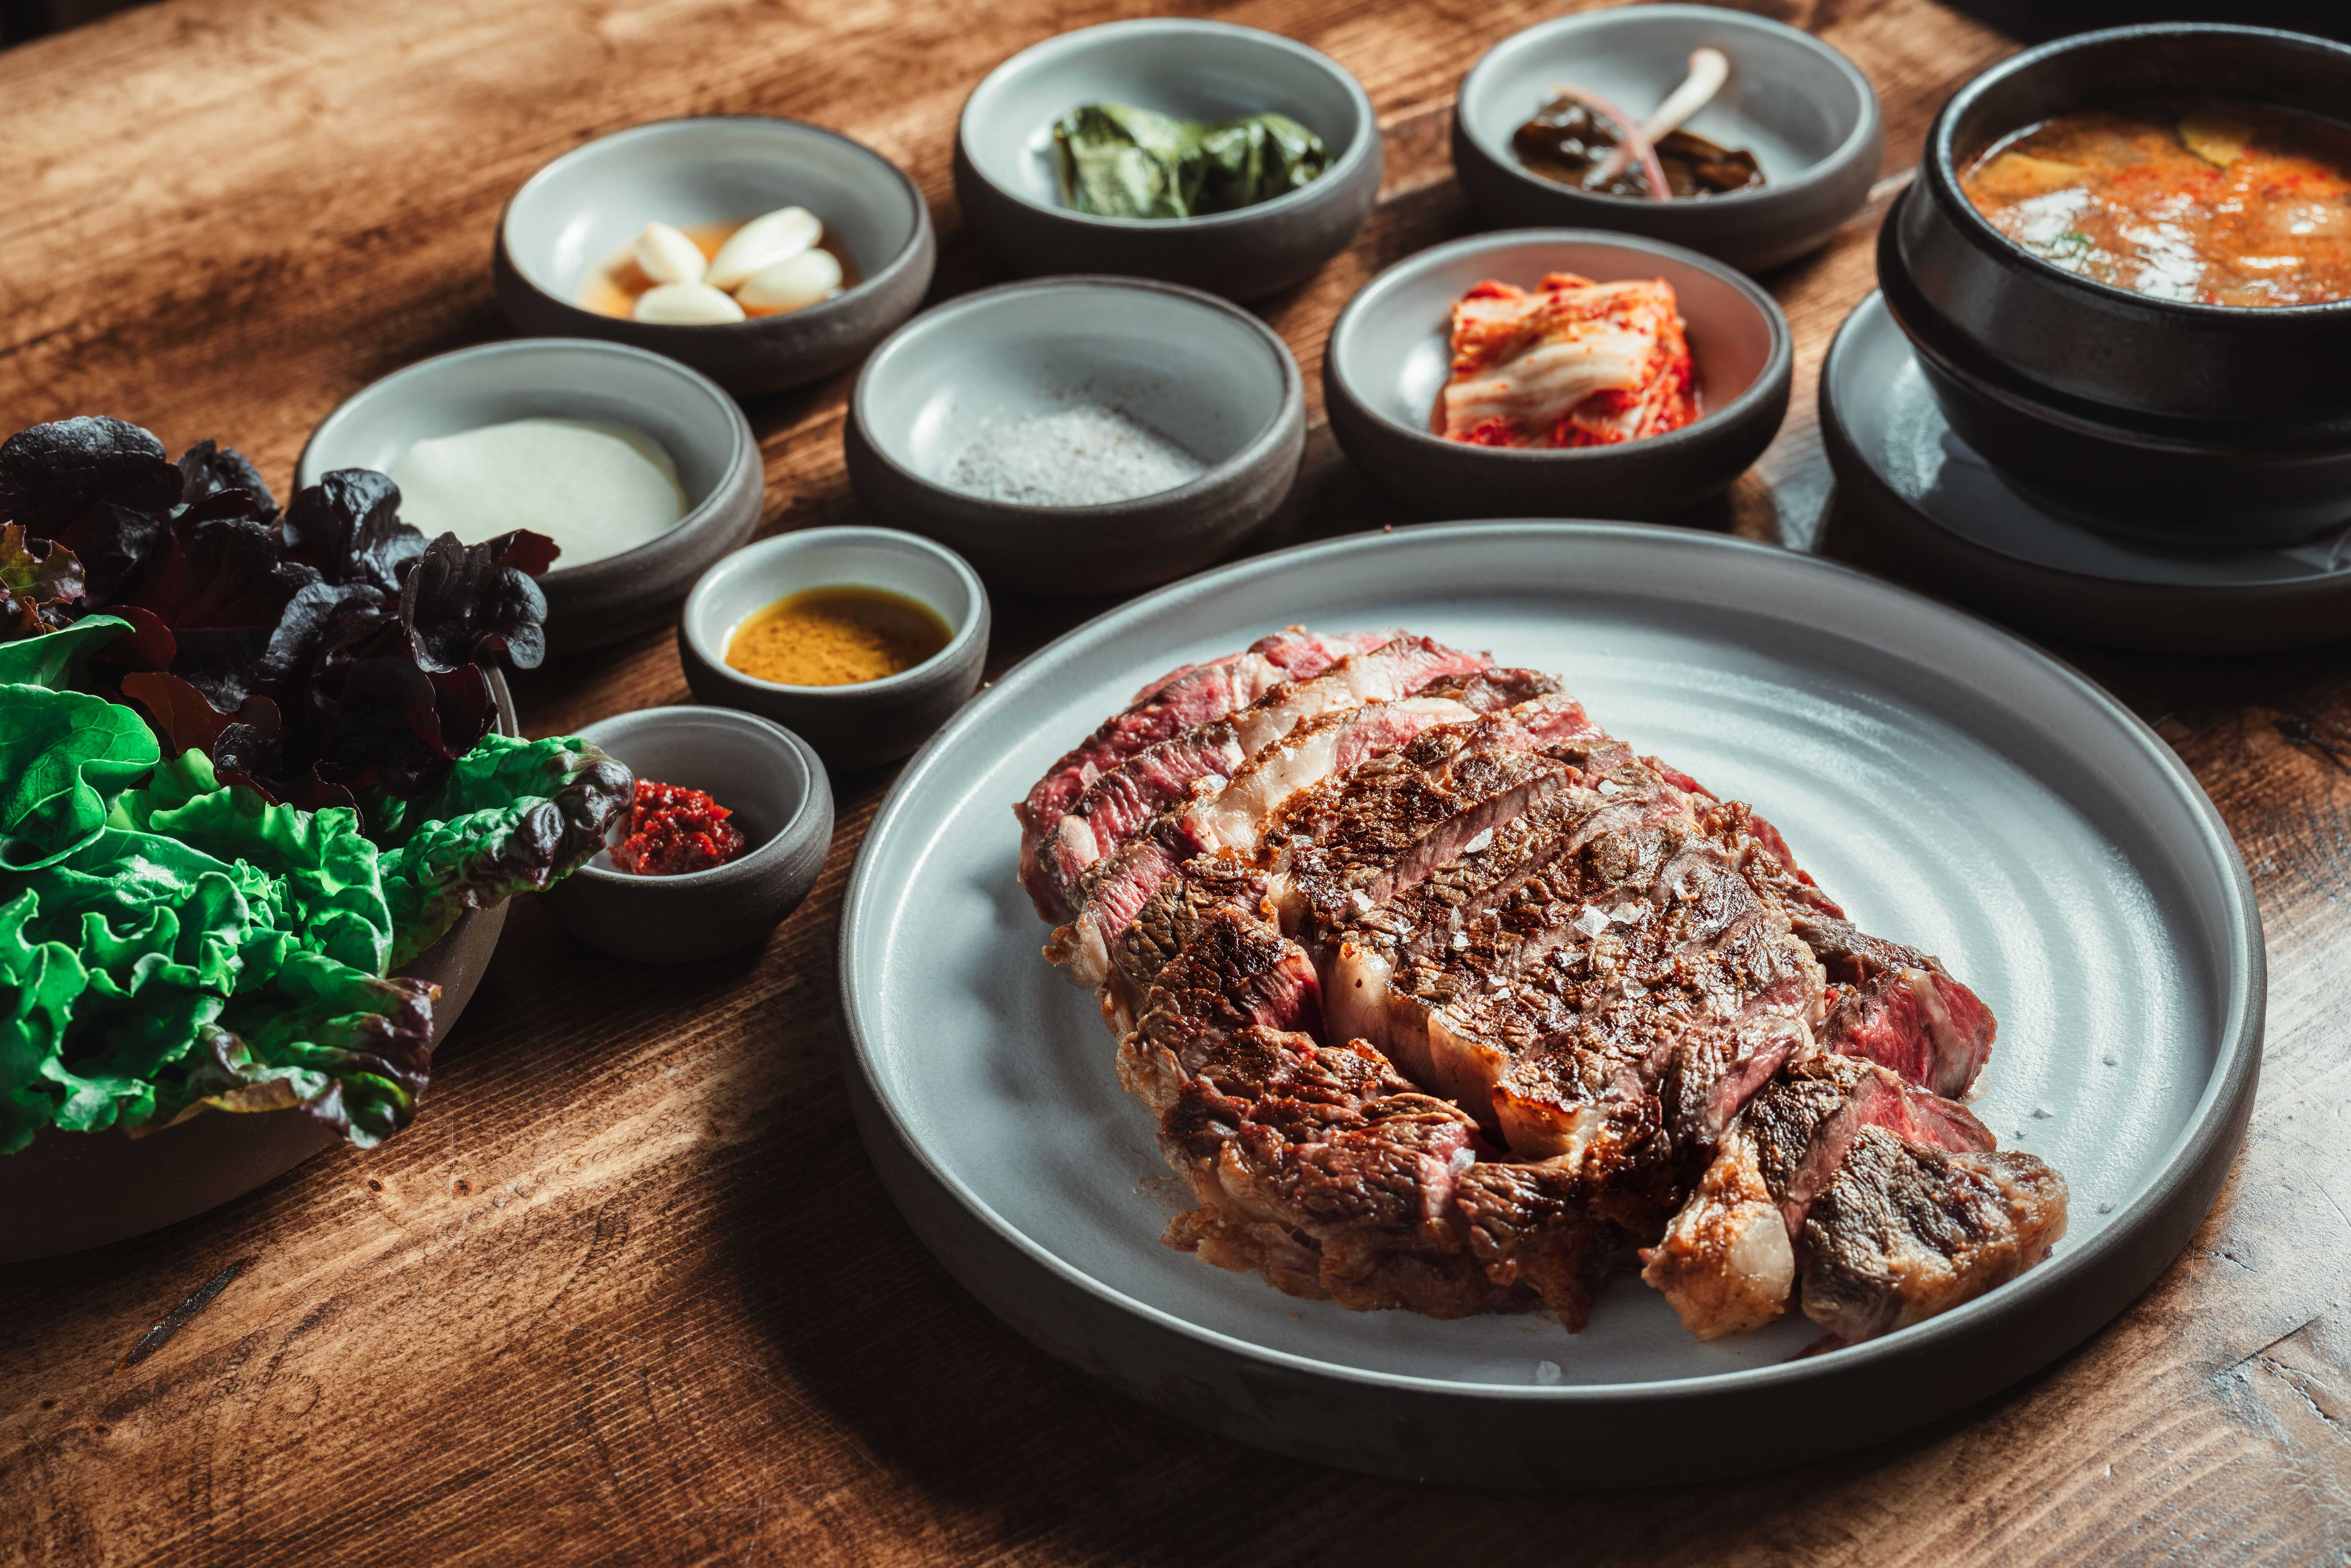 木桌上的灰色盘子里放着一片半熟的肋眼肉。背景中可以看到小盘韩式配菜。